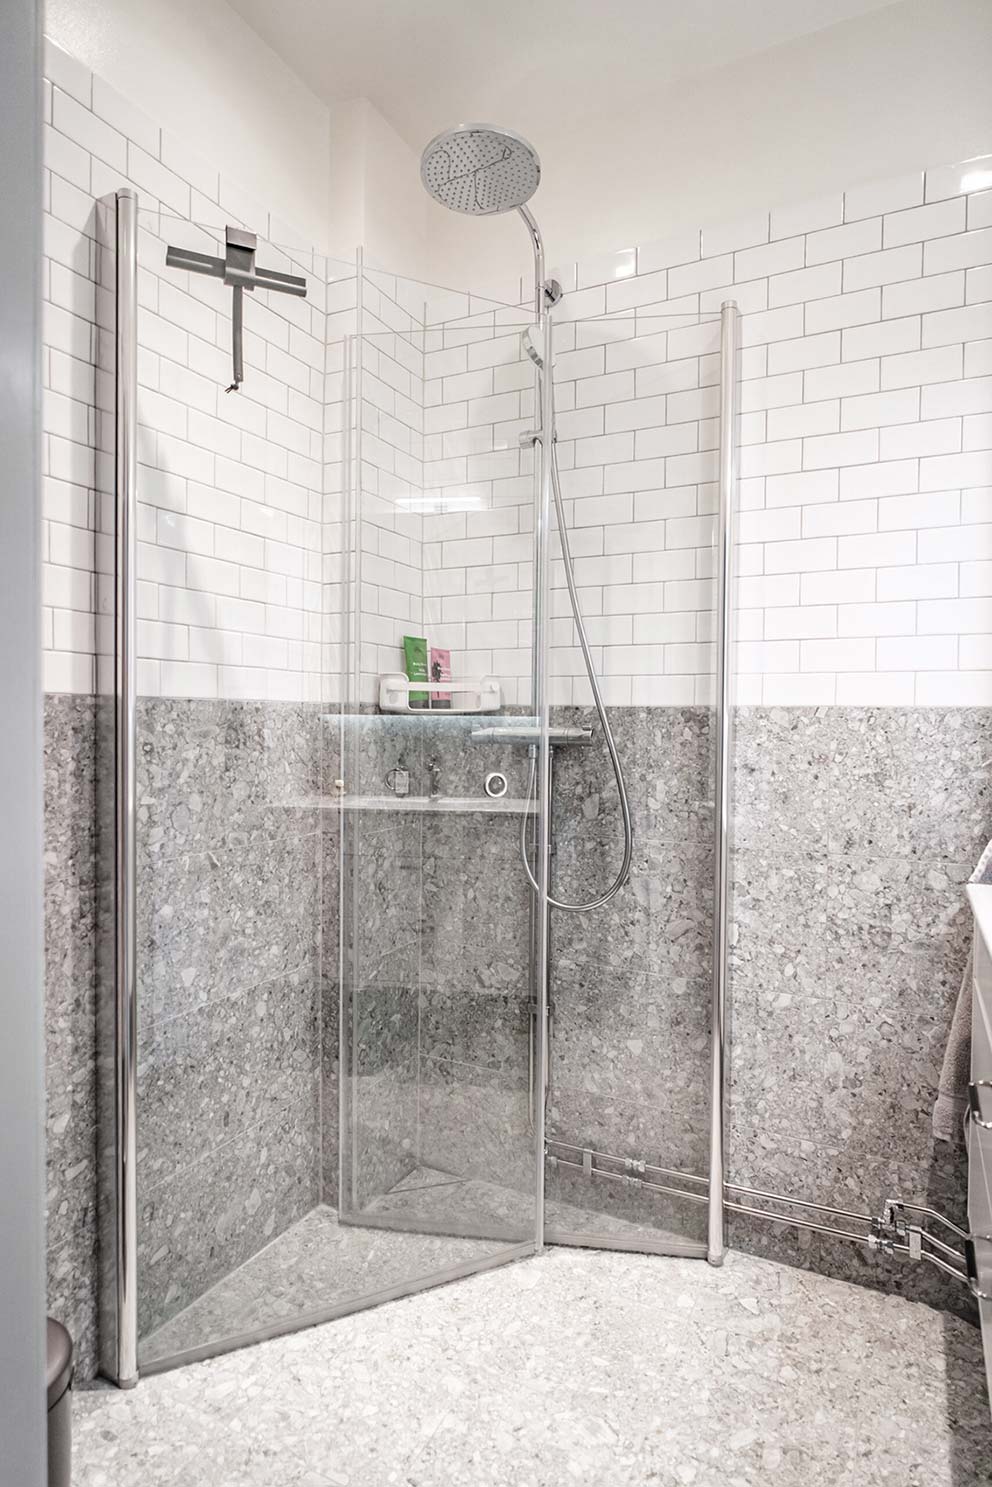 Badrum med vitt kakel och sten på väggarna, en dusch med glasdörrar och ett vattenfallsmunstycke i duschen